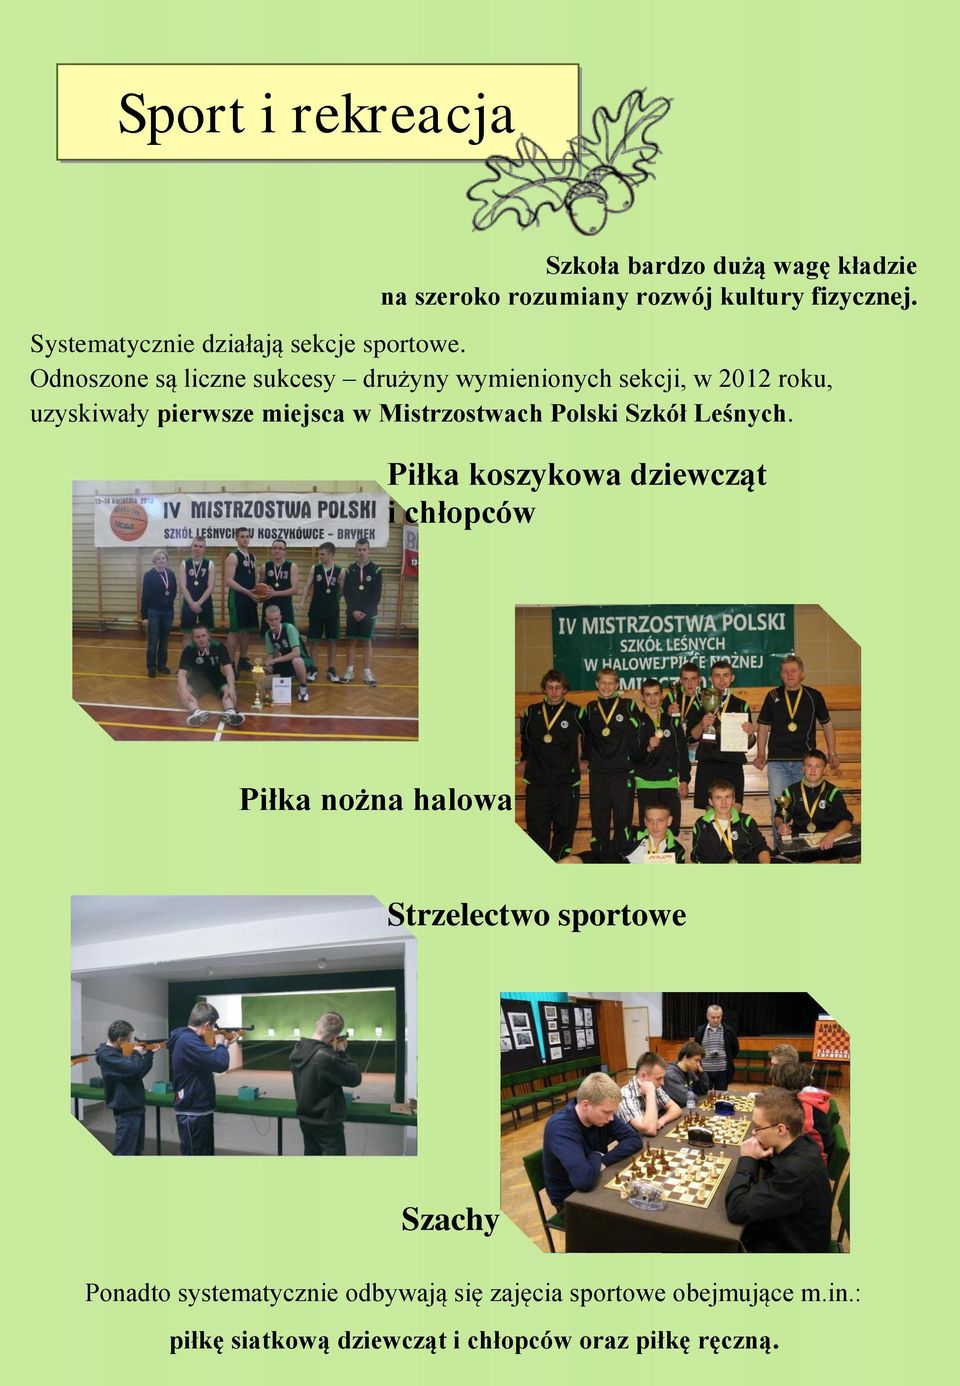 Odnoszone są liczne sukcesy drużyny wymienionych sekcji, w 2012 roku, uzyskiwały pierwsze miejsca w Mistrzostwach Polski Szkół